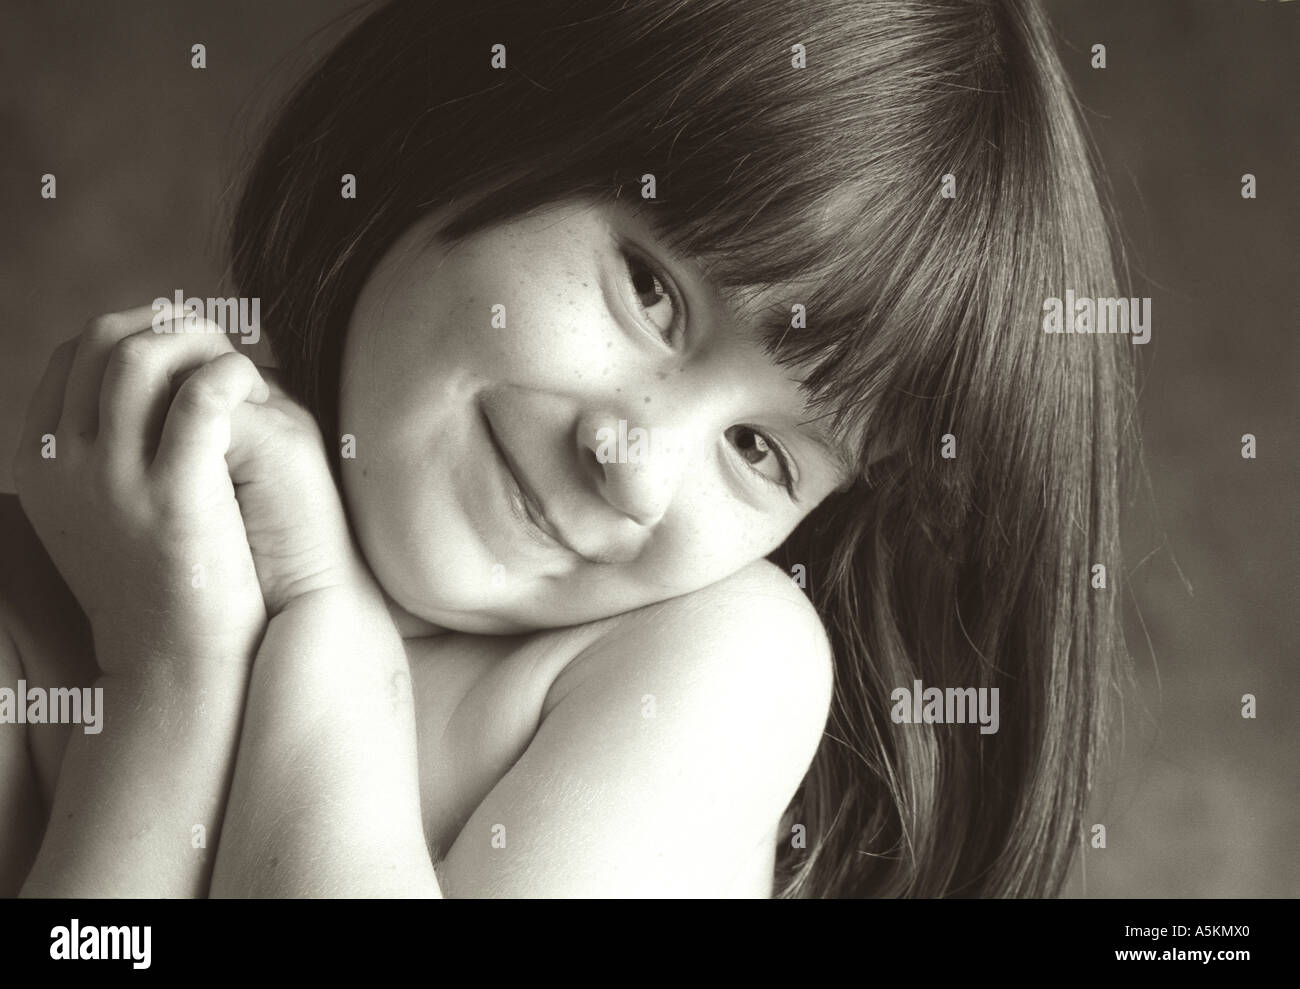 Ein junges Mädchen faltet ihre Hände und lächelt süß in diesem schwarz / weiß Foto. Stockfoto